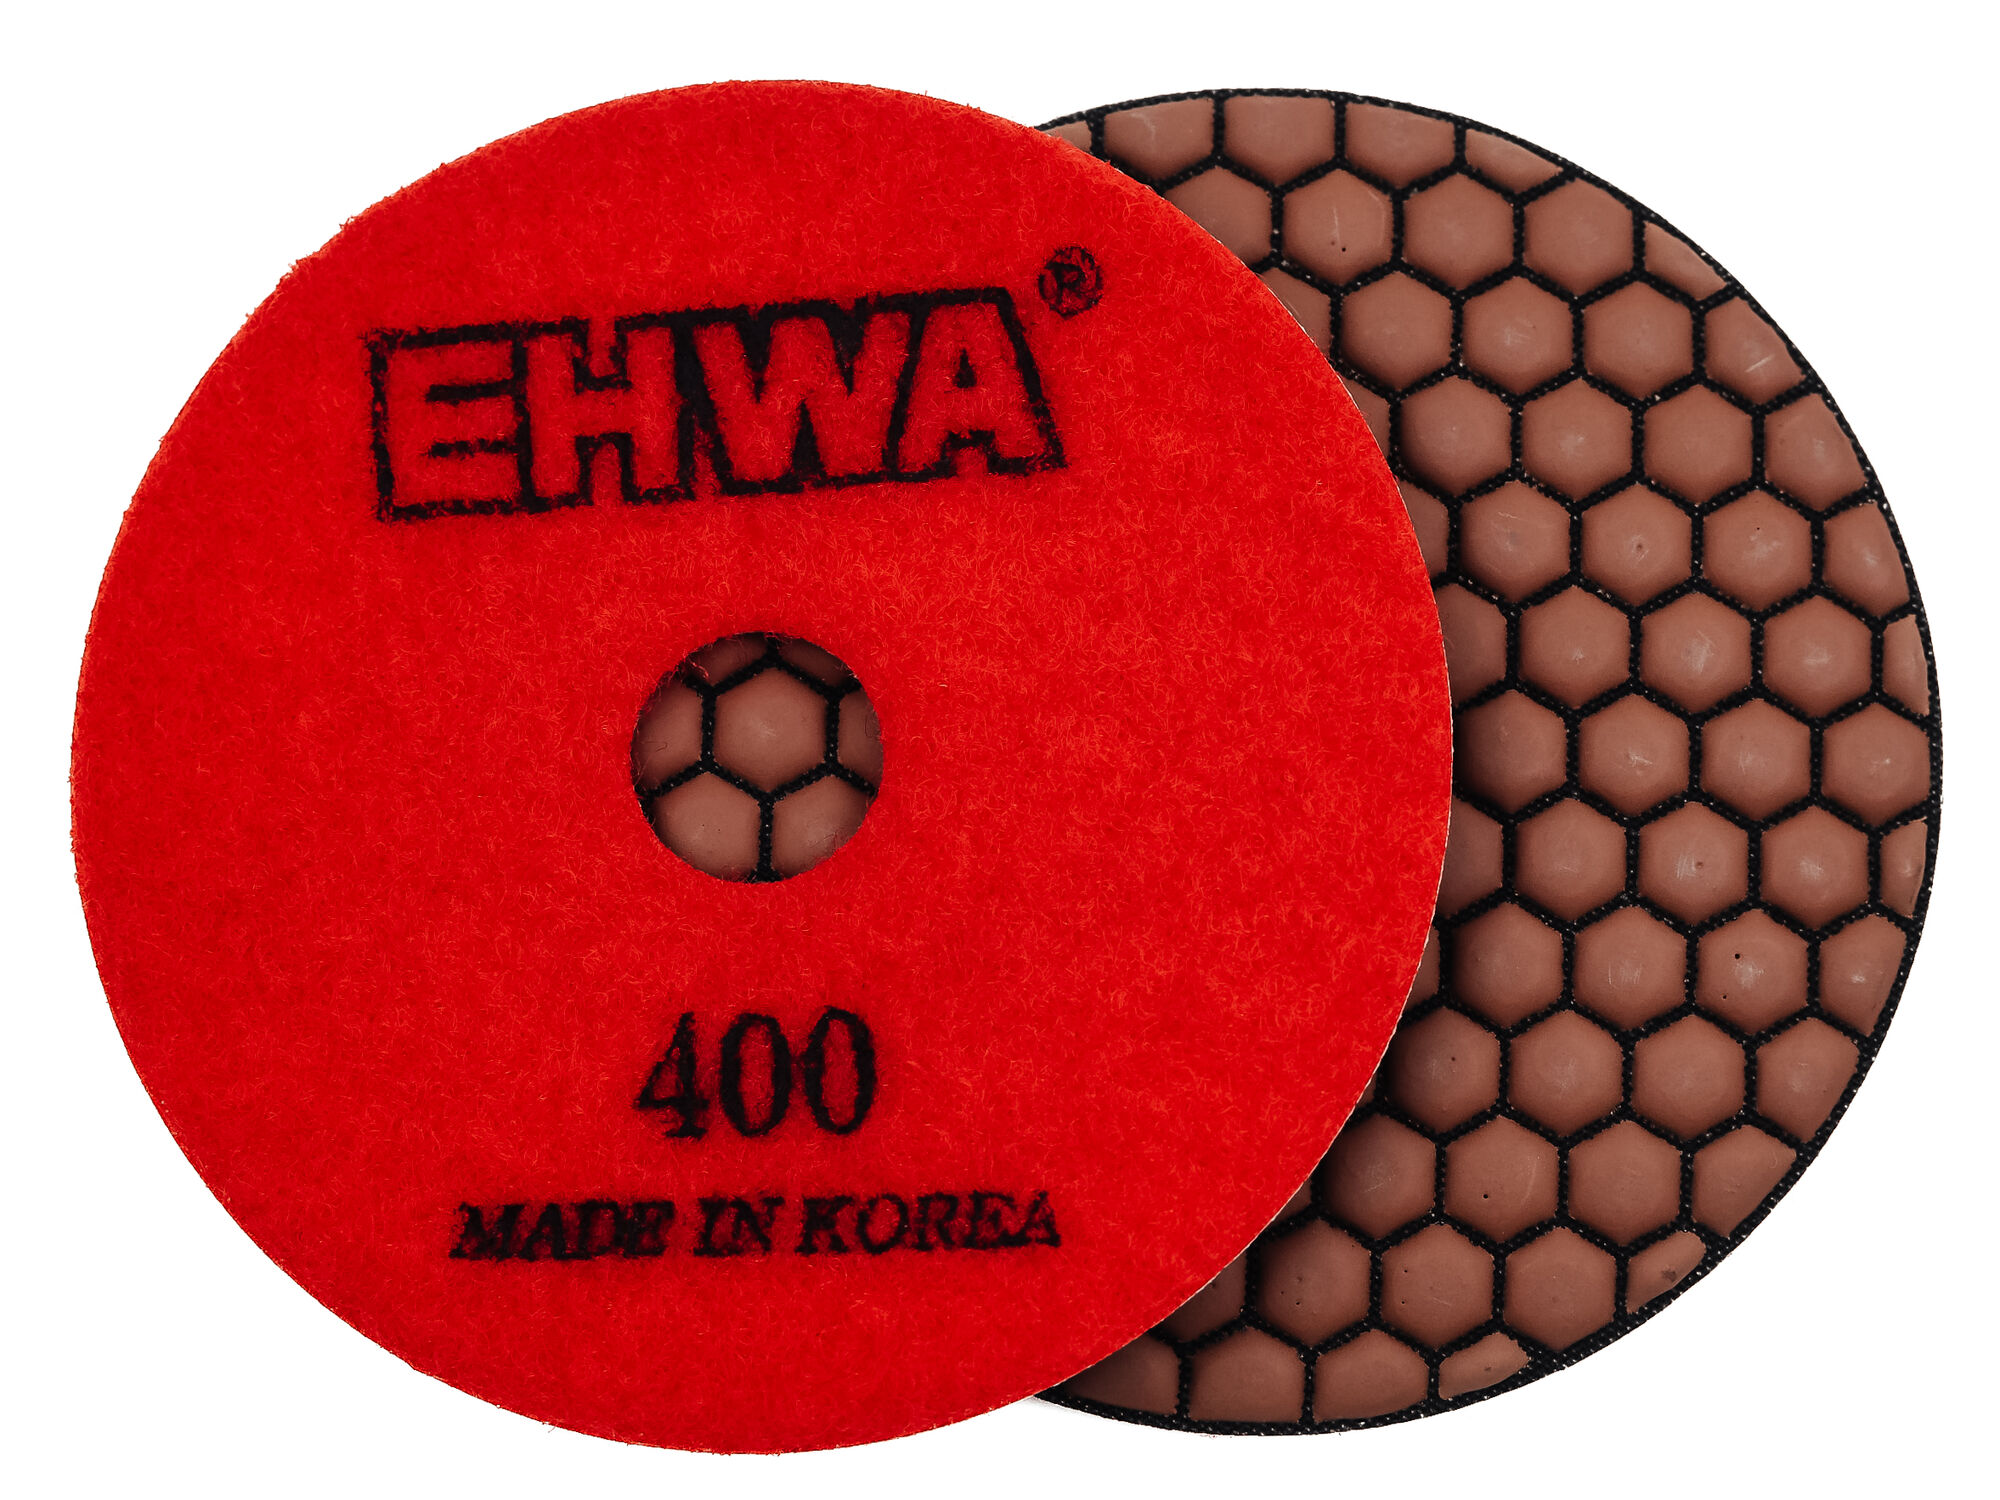 Алмазные гибкие полировальные диски № 400 d 100 мм по камню EHWA (Ихва) сухие